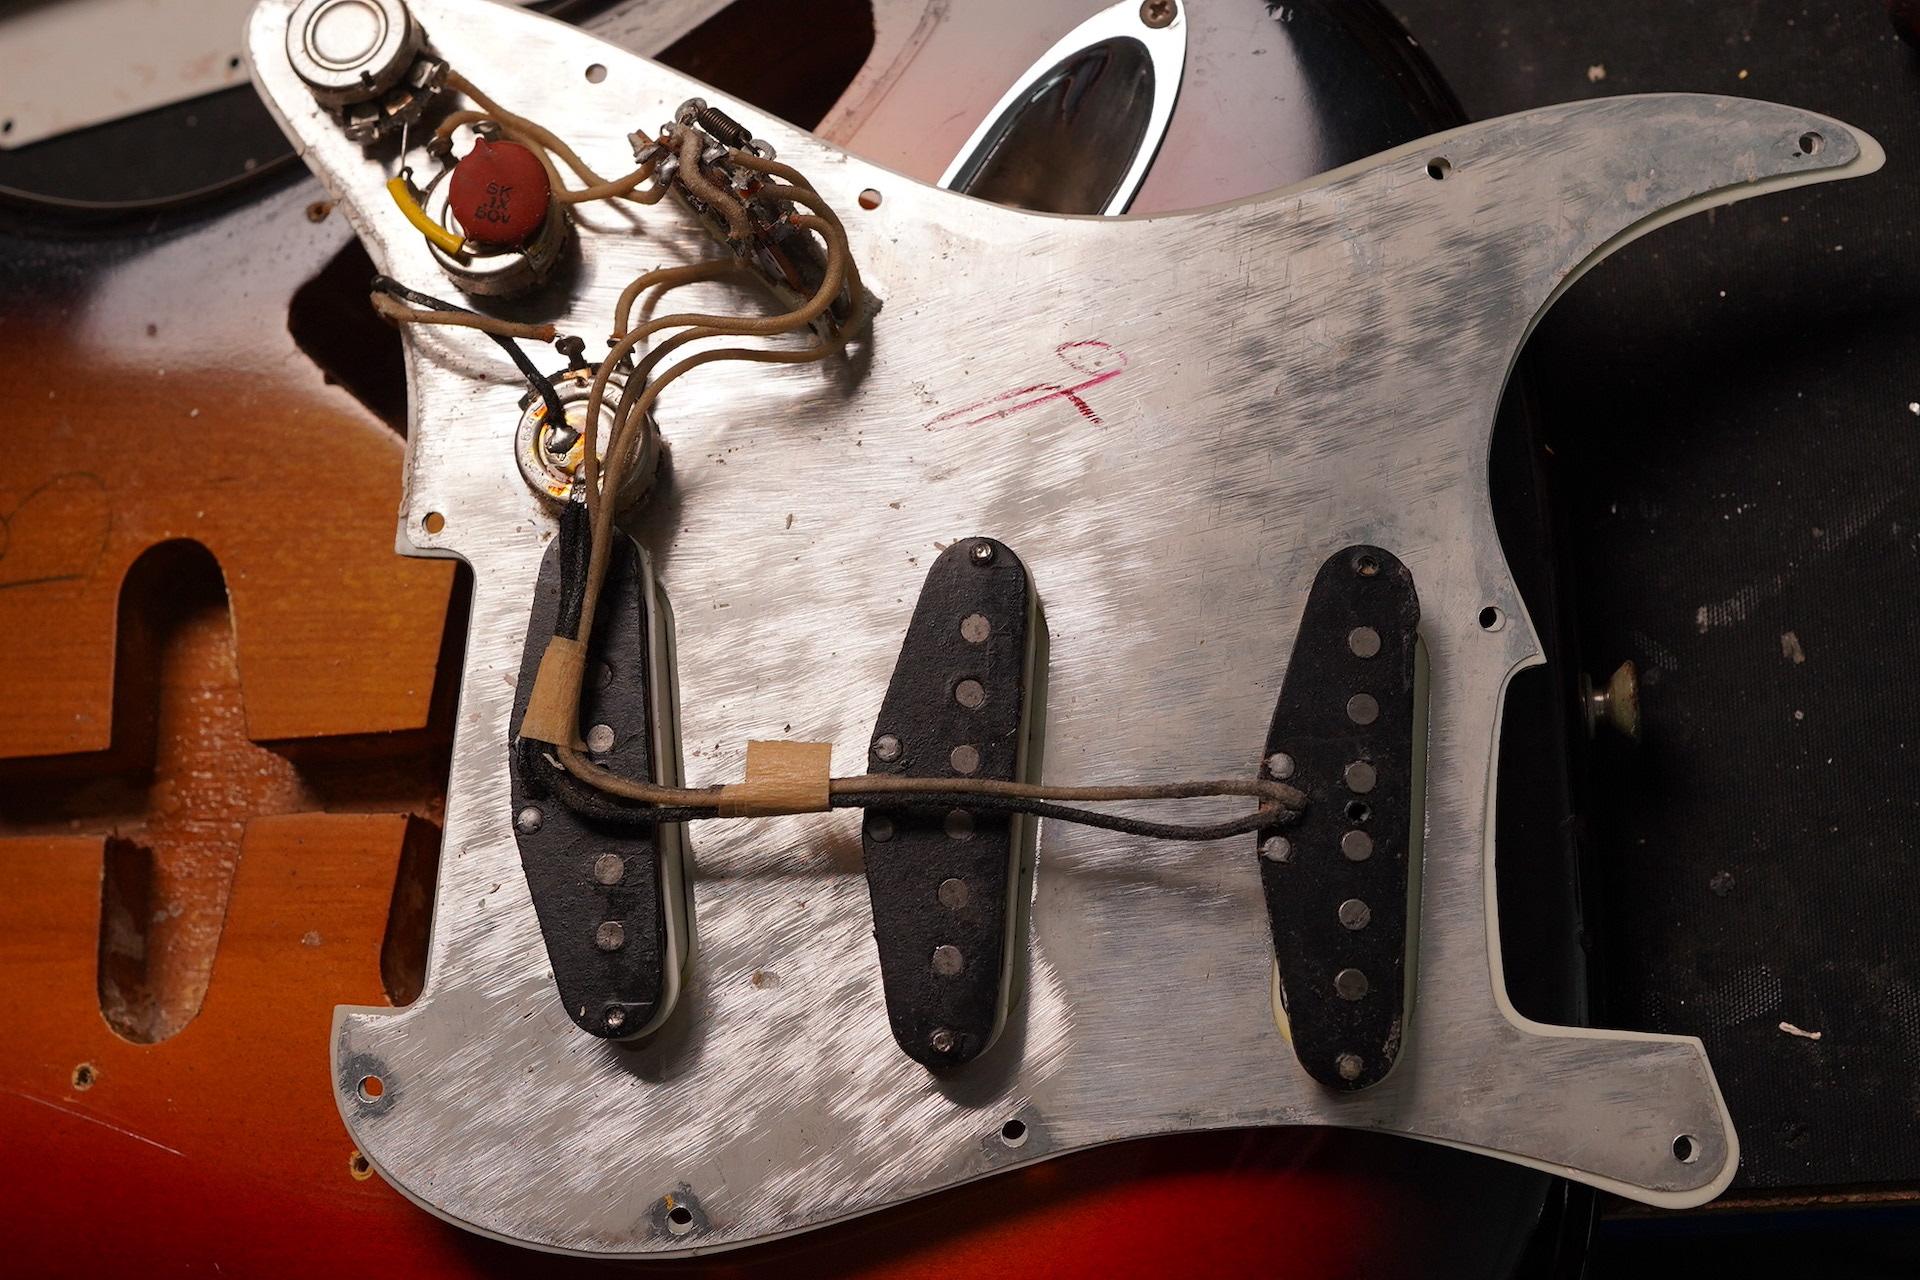 1963 Fender Stratocaster near MINT